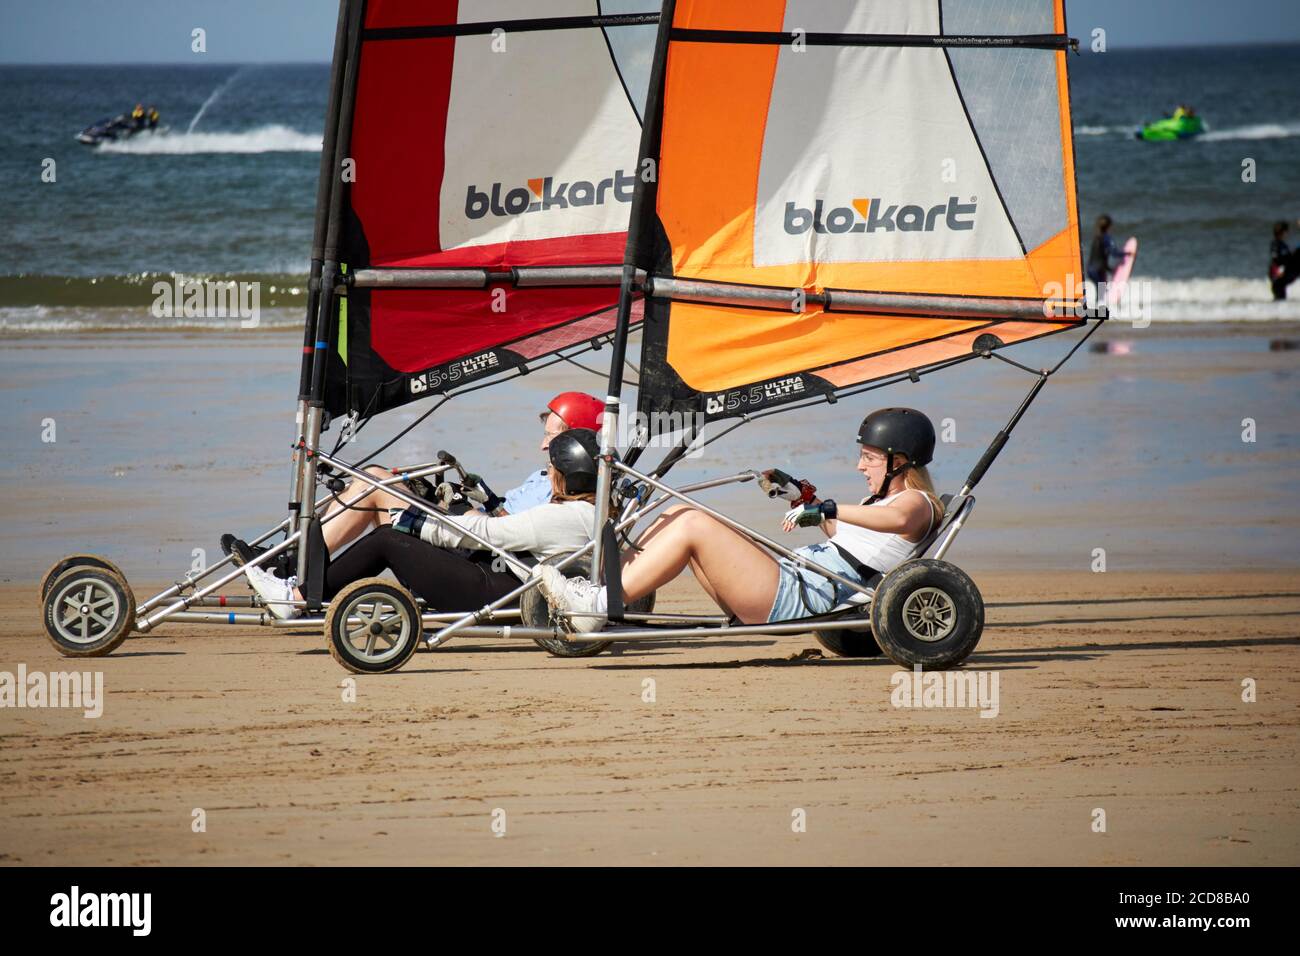 Menschen fahren blokart kompakte Land Yachten auf benone Strand nördlich irland großbritannien Stockfoto